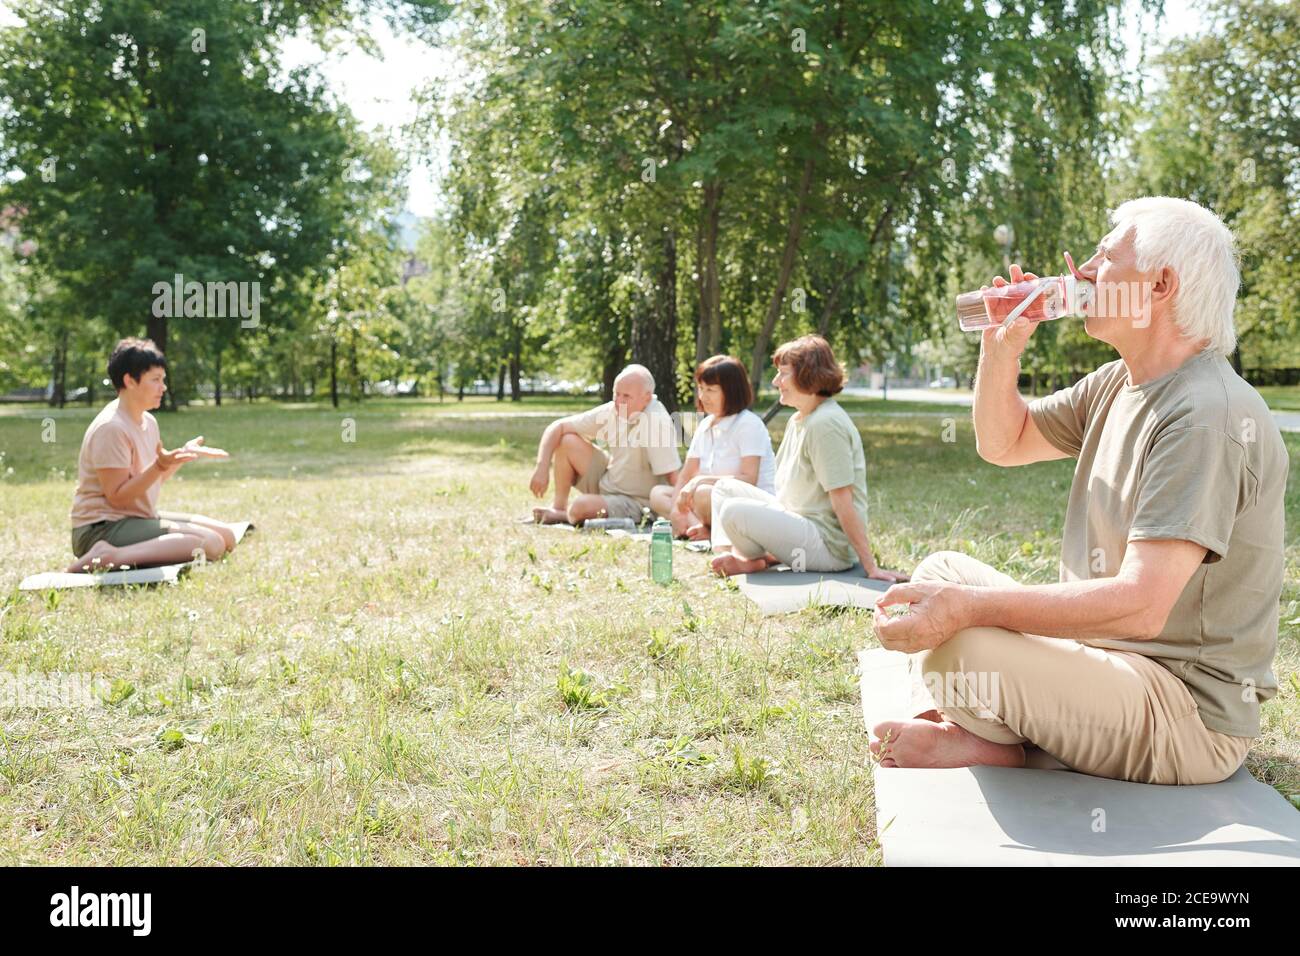 Uomo anziano con baffi seduti con gambe incrociate sul tappetino nel parco e nell'acqua potabile dopo la pratica di yoga Foto Stock